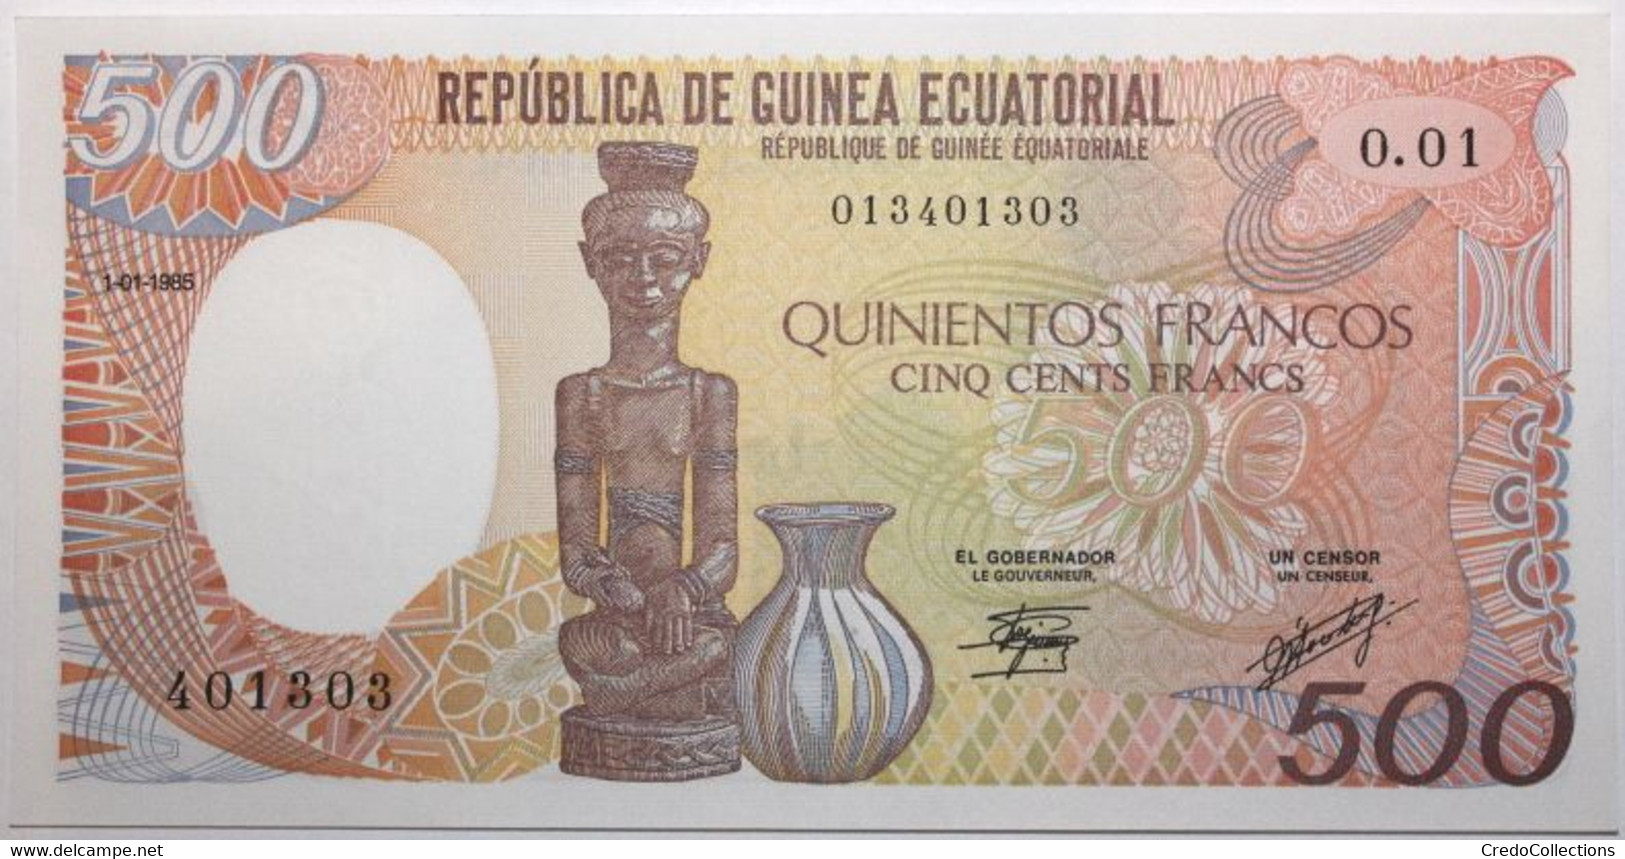 Guinée équatoriale - 500 Francos - 1985 - PICK 20 - NEUF - Equatorial Guinea